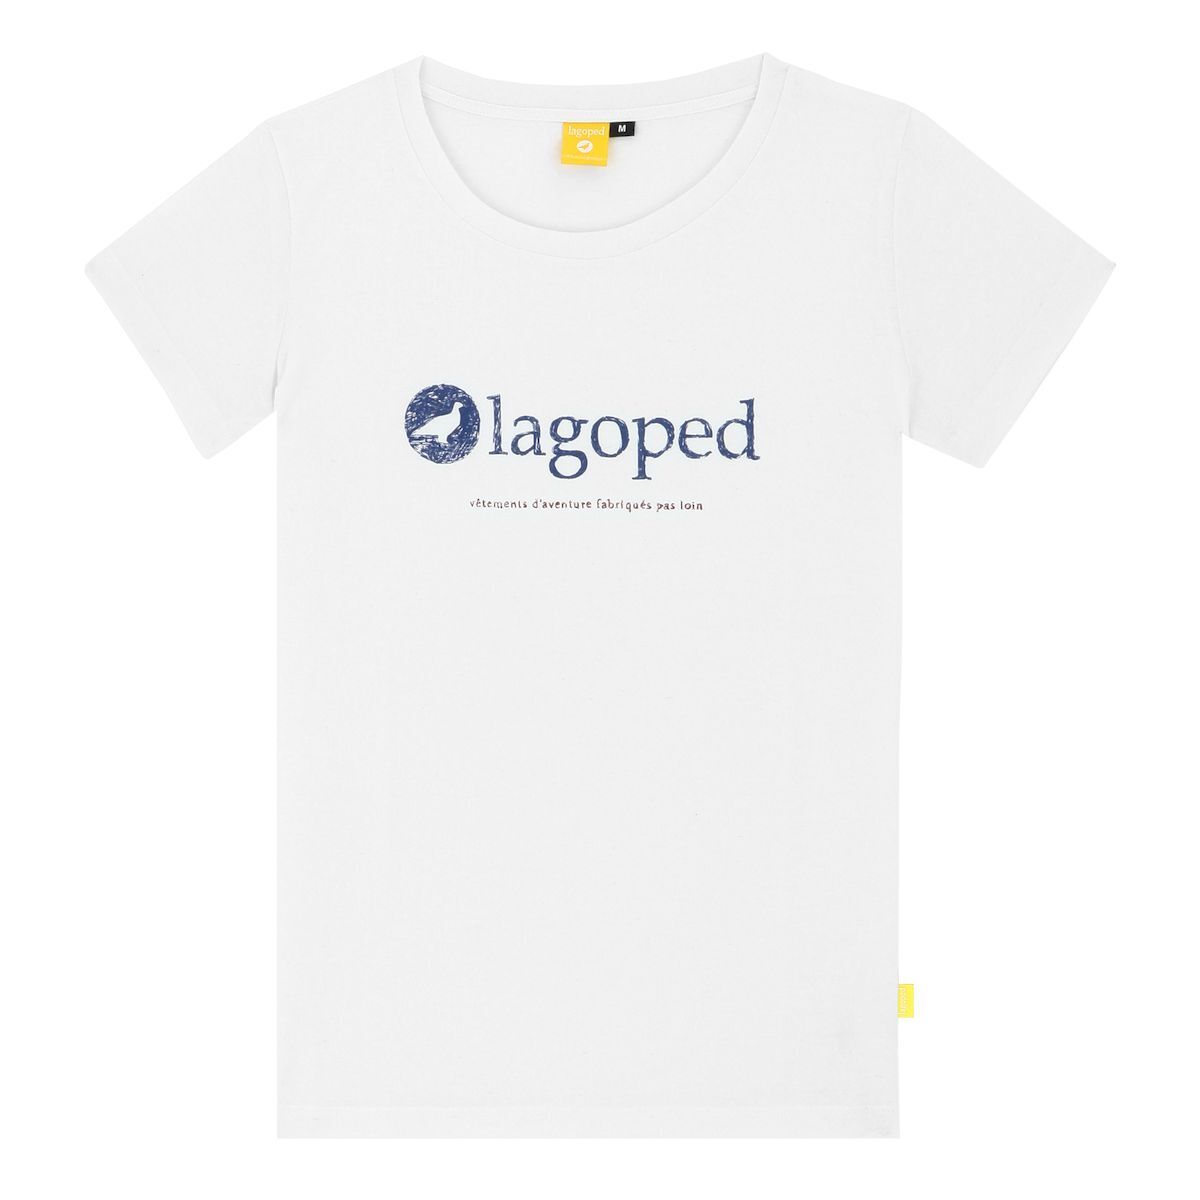 Lagoped Teerec Flag - T-shirt - Women's